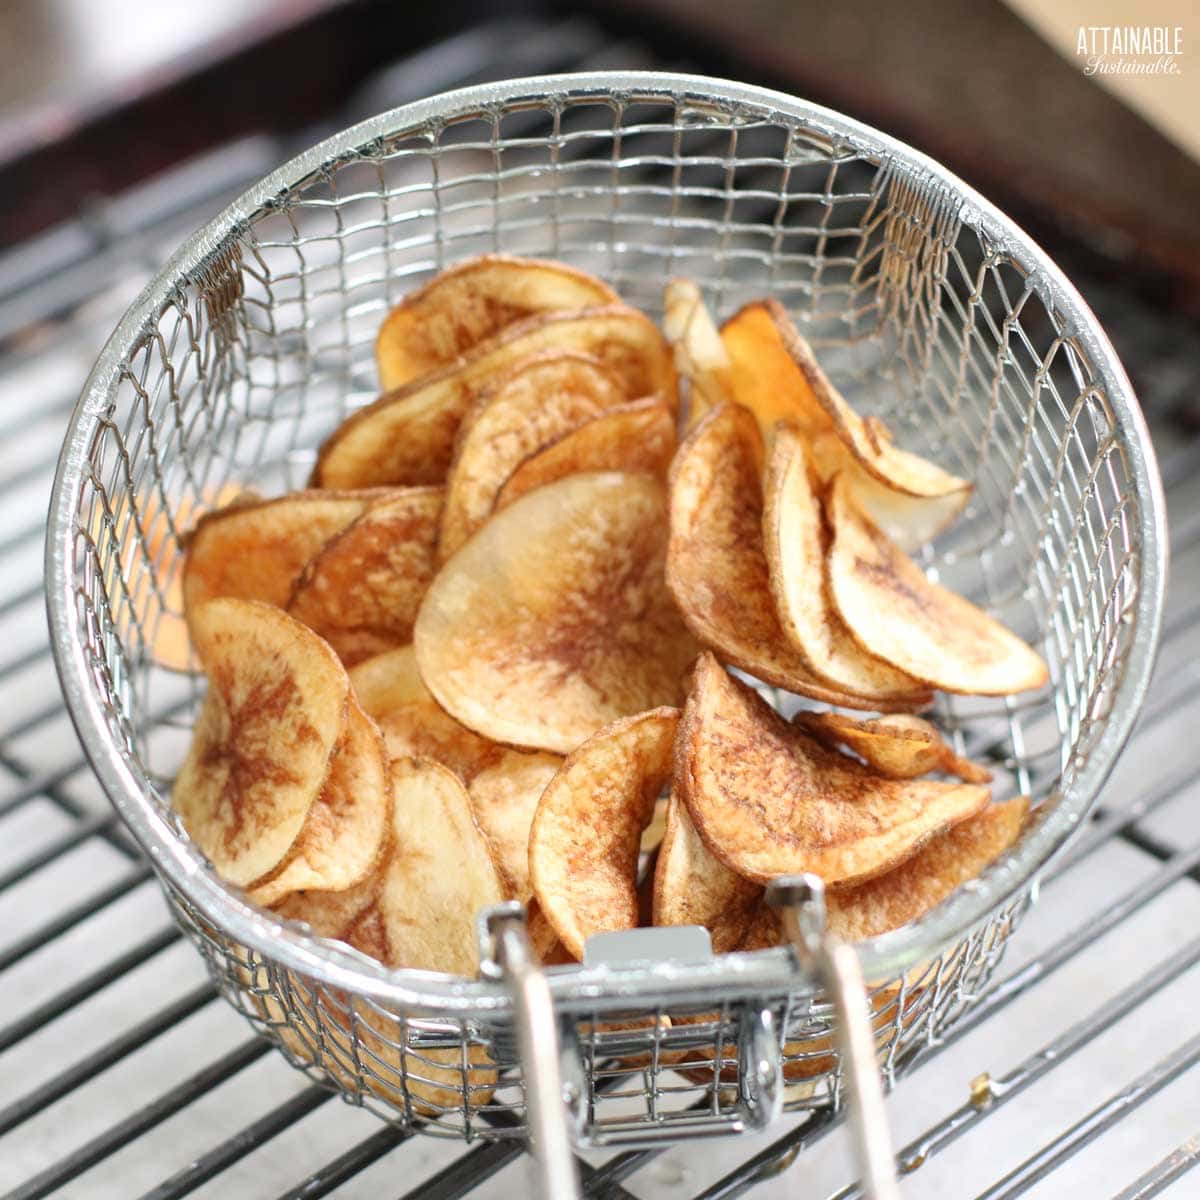 potato chips in a deep fryer basket.